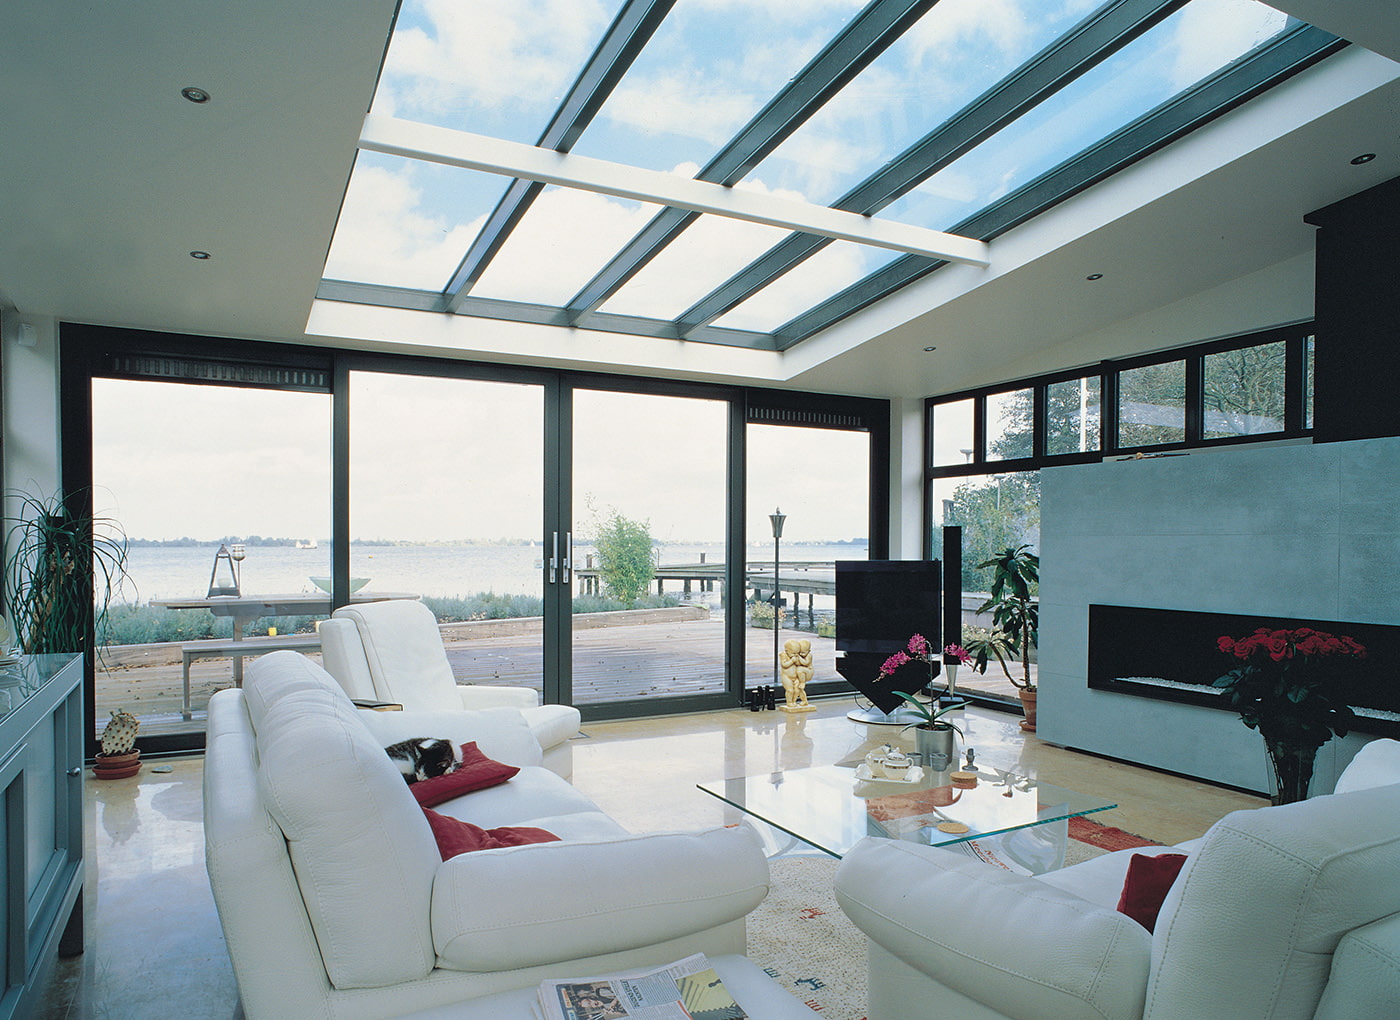 Wohnzimmereinrichtung in einem Landhaus mit Panoramafenstern